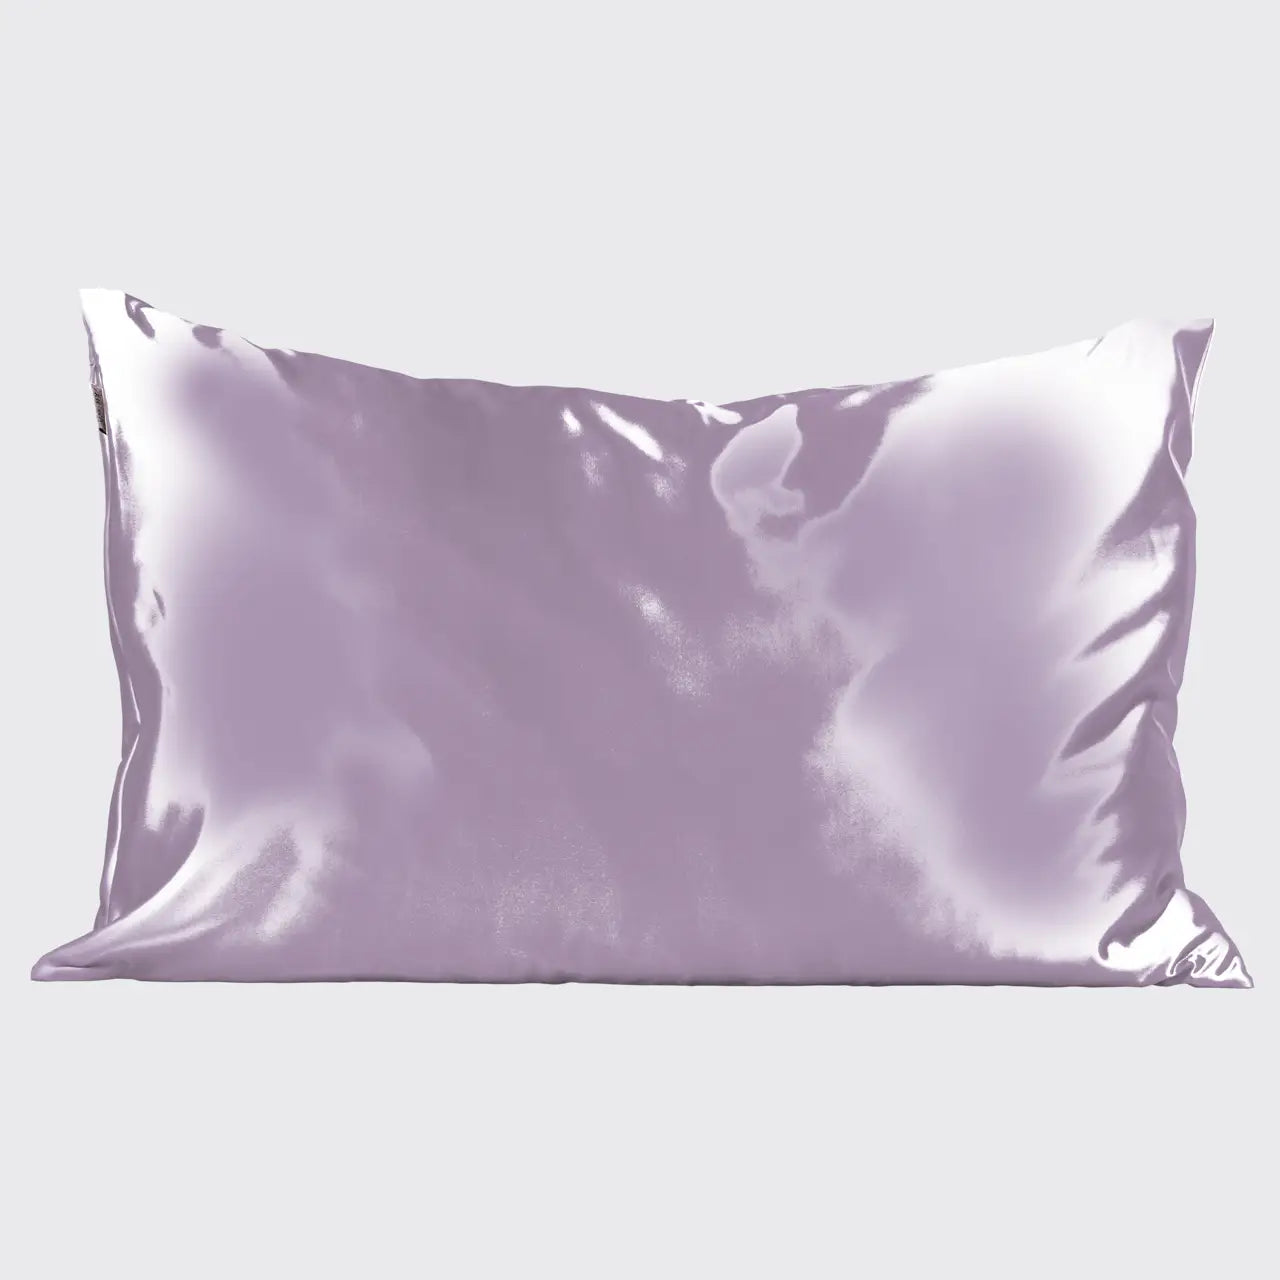 Satin Pillowcase - Standard/Queen Size